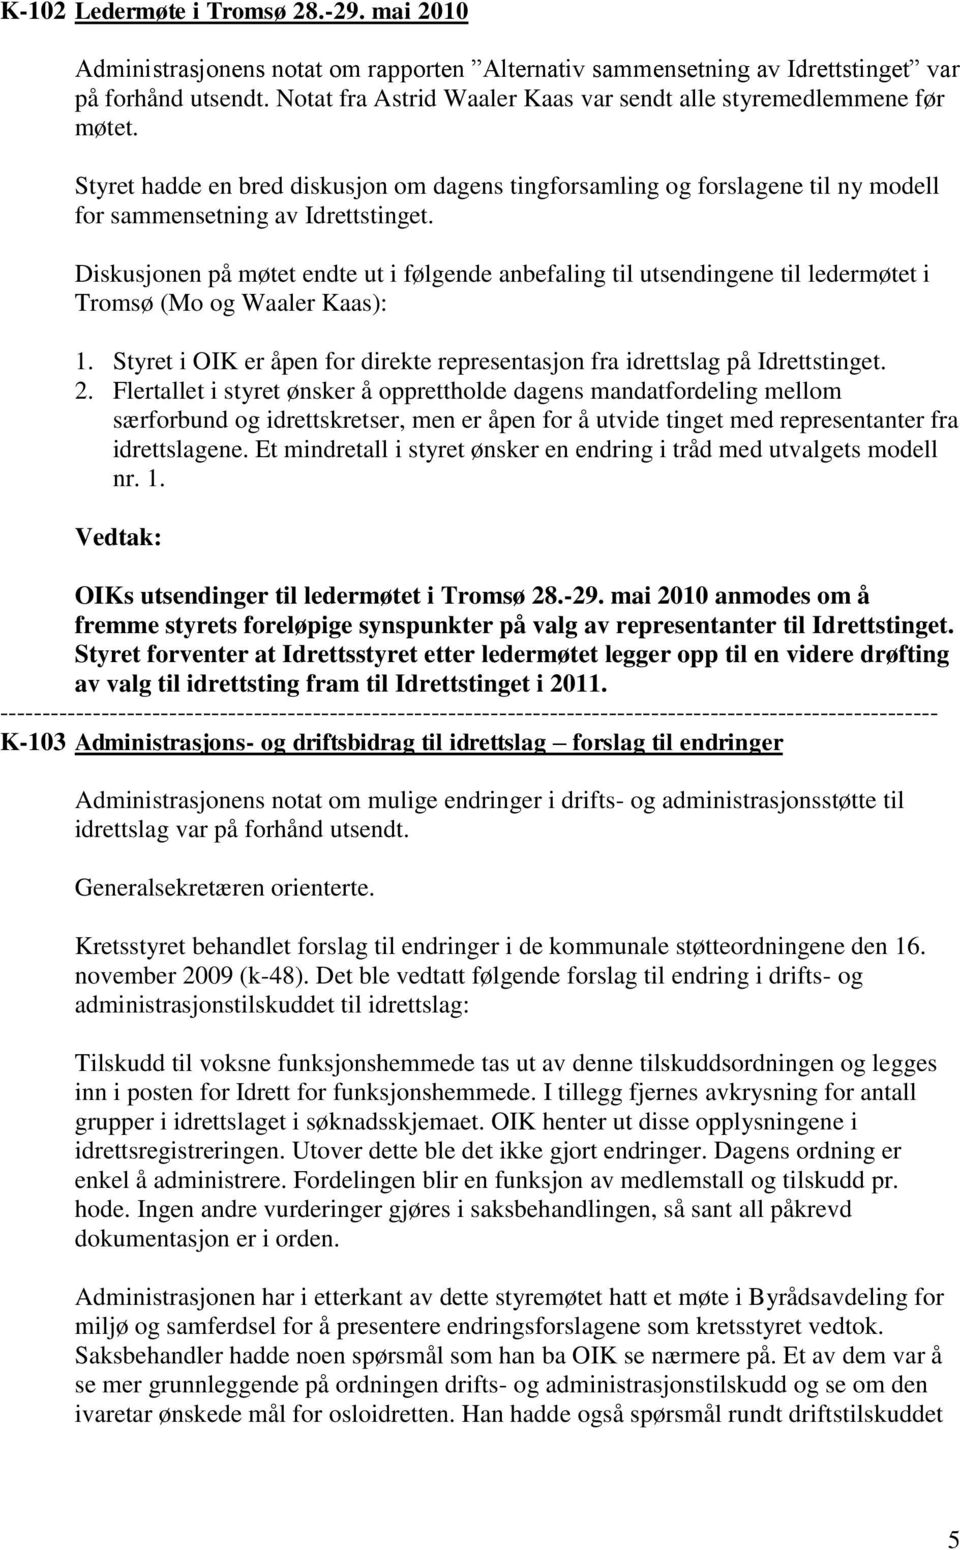 Diskusjonen på møtet endte ut i følgende anbefaling til utsendingene til ledermøtet i Tromsø (Mo og Waaler Kaas): 1. Styret i OIK er åpen for direkte representasjon fra idrettslag på Idrettstinget. 2.